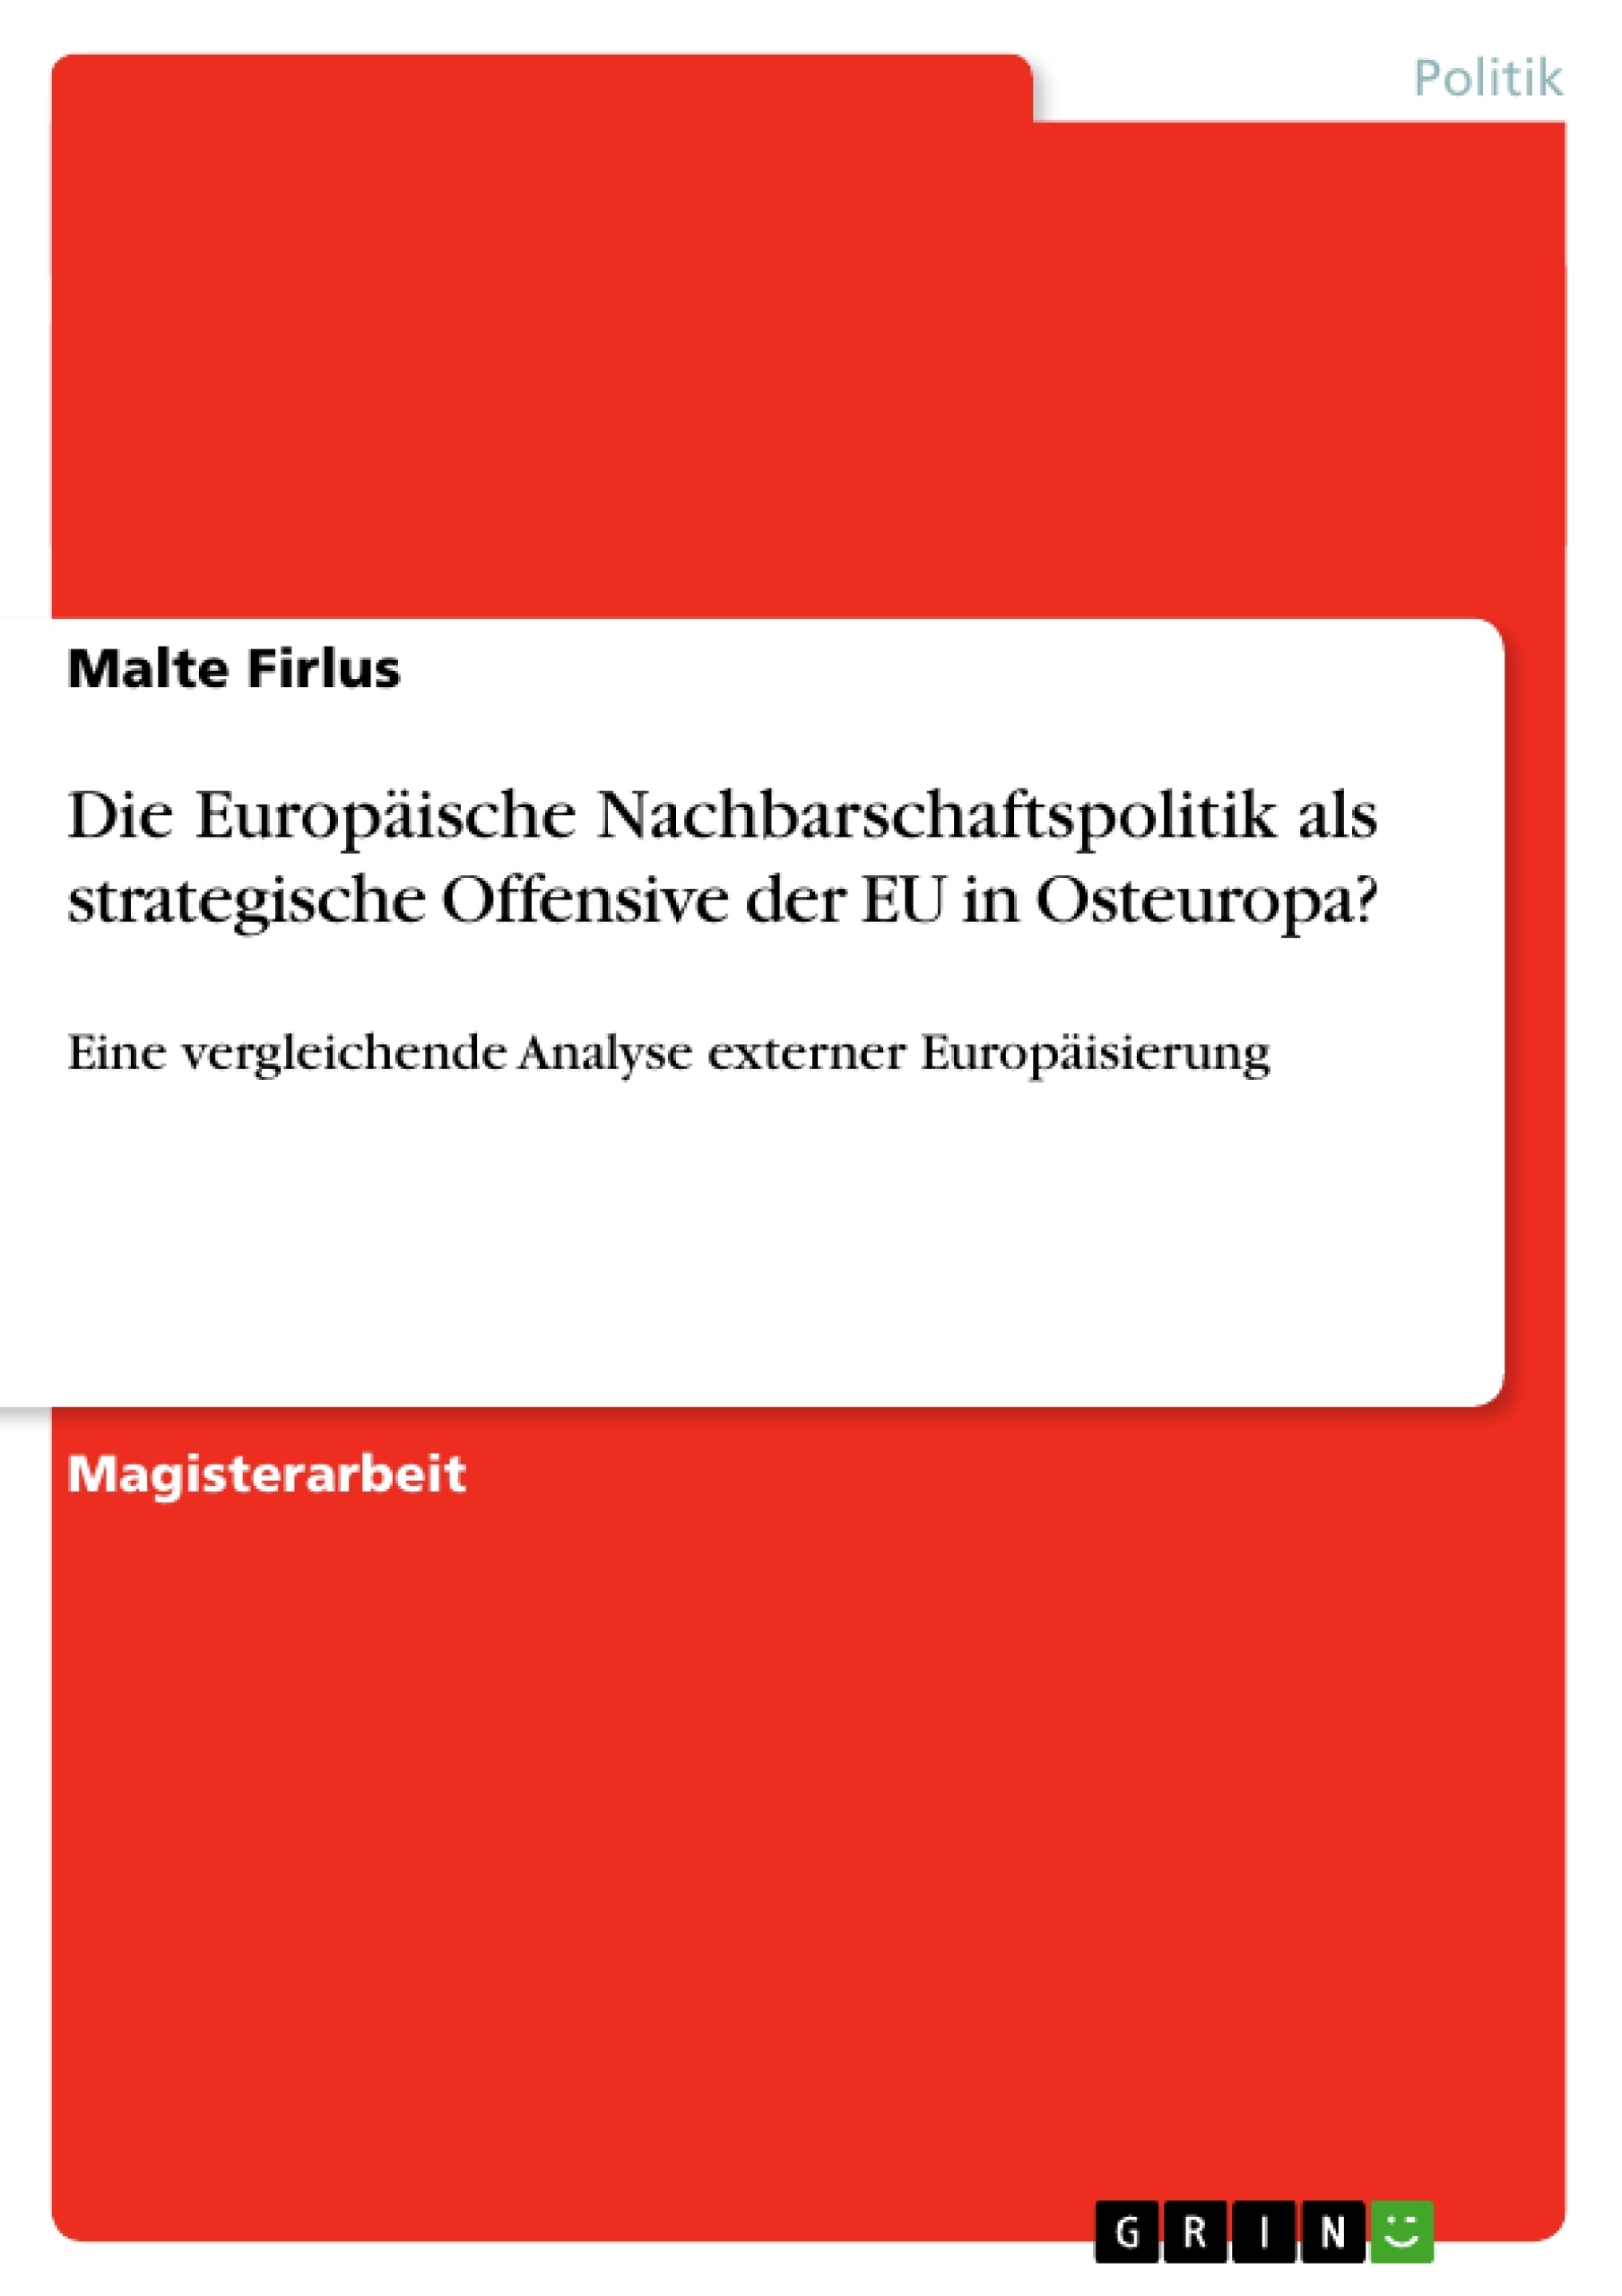 Titre: Die Europäische Nachbarschaftspolitik als strategische Offensive der EU in Osteuropa?